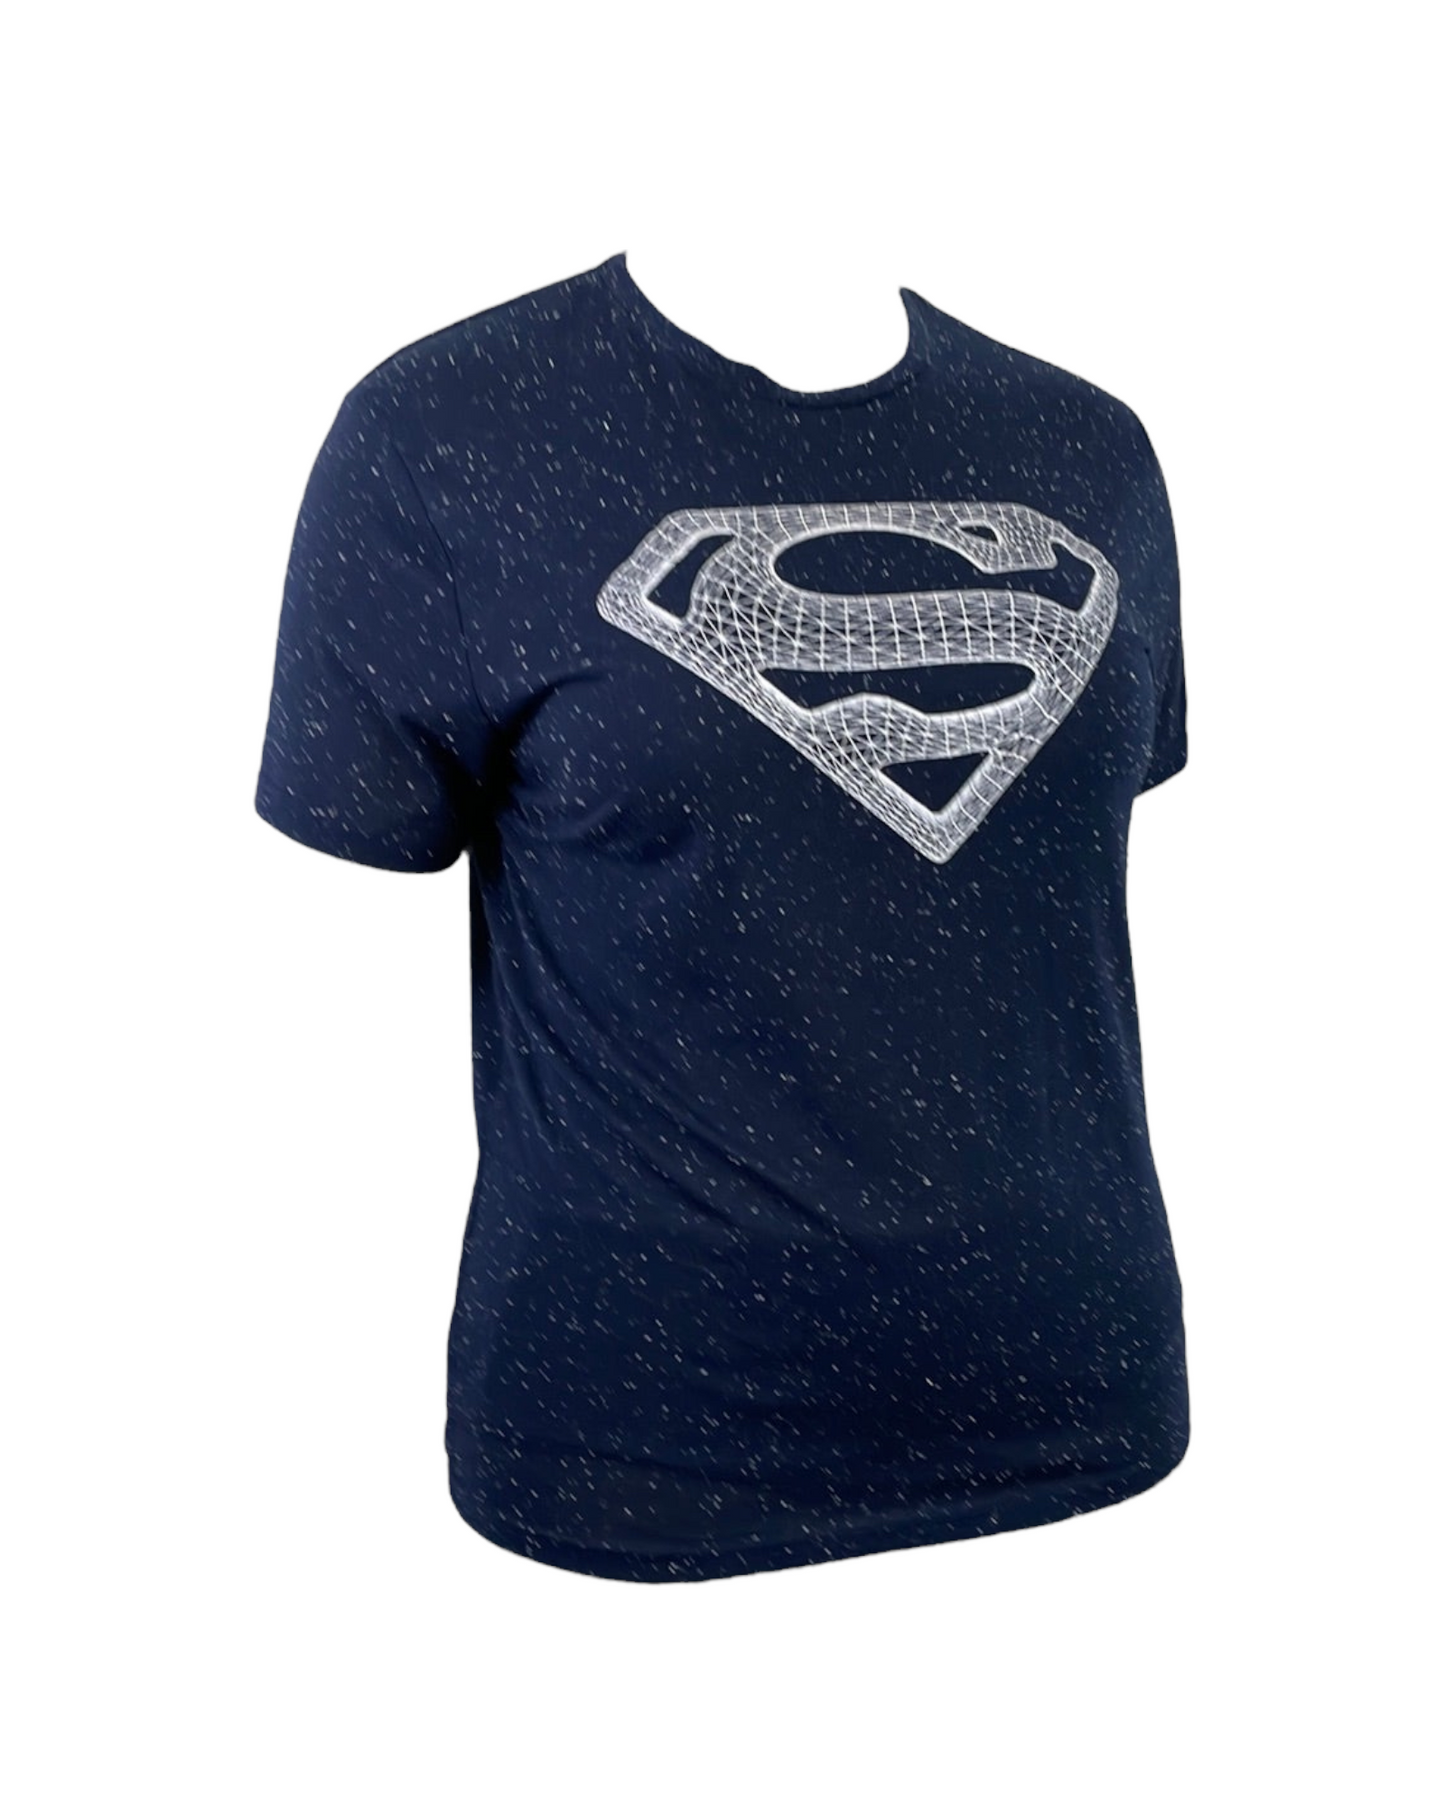 “Superman” Navy Blue W/ White Speckle T-Shirt (L)